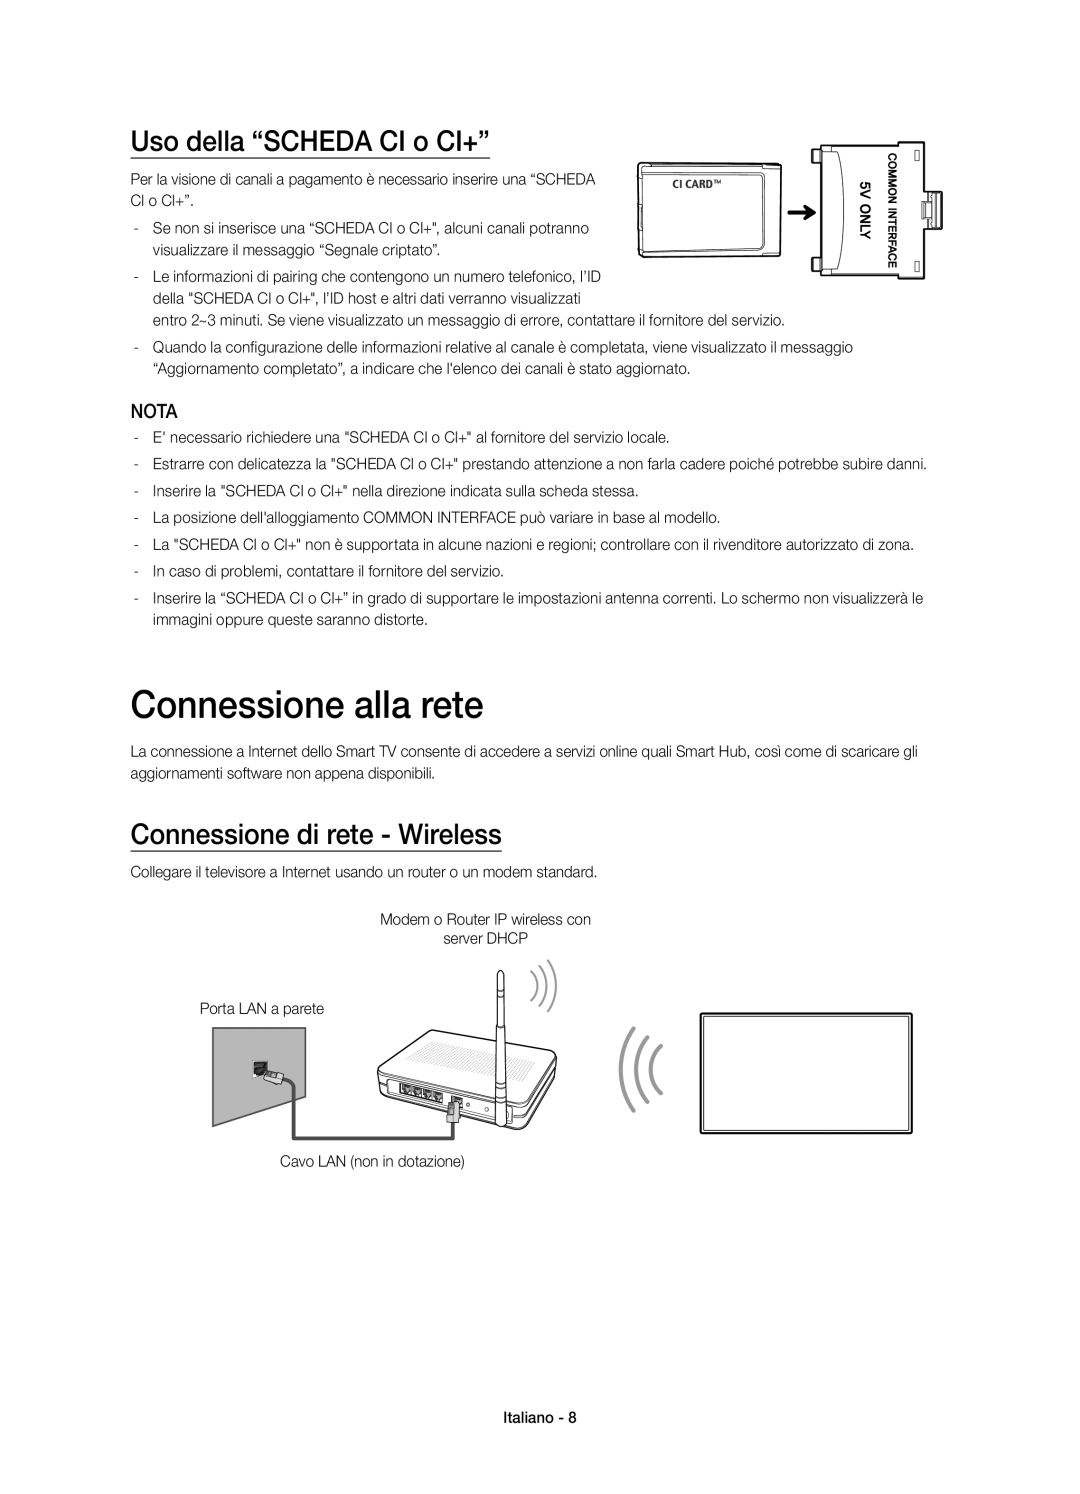 Samsung UE48H6750SVXZG manual Connessione alla rete, Uso della “SCHEDA CI o CI+”, Connessione di rete - Wireless, Nota 